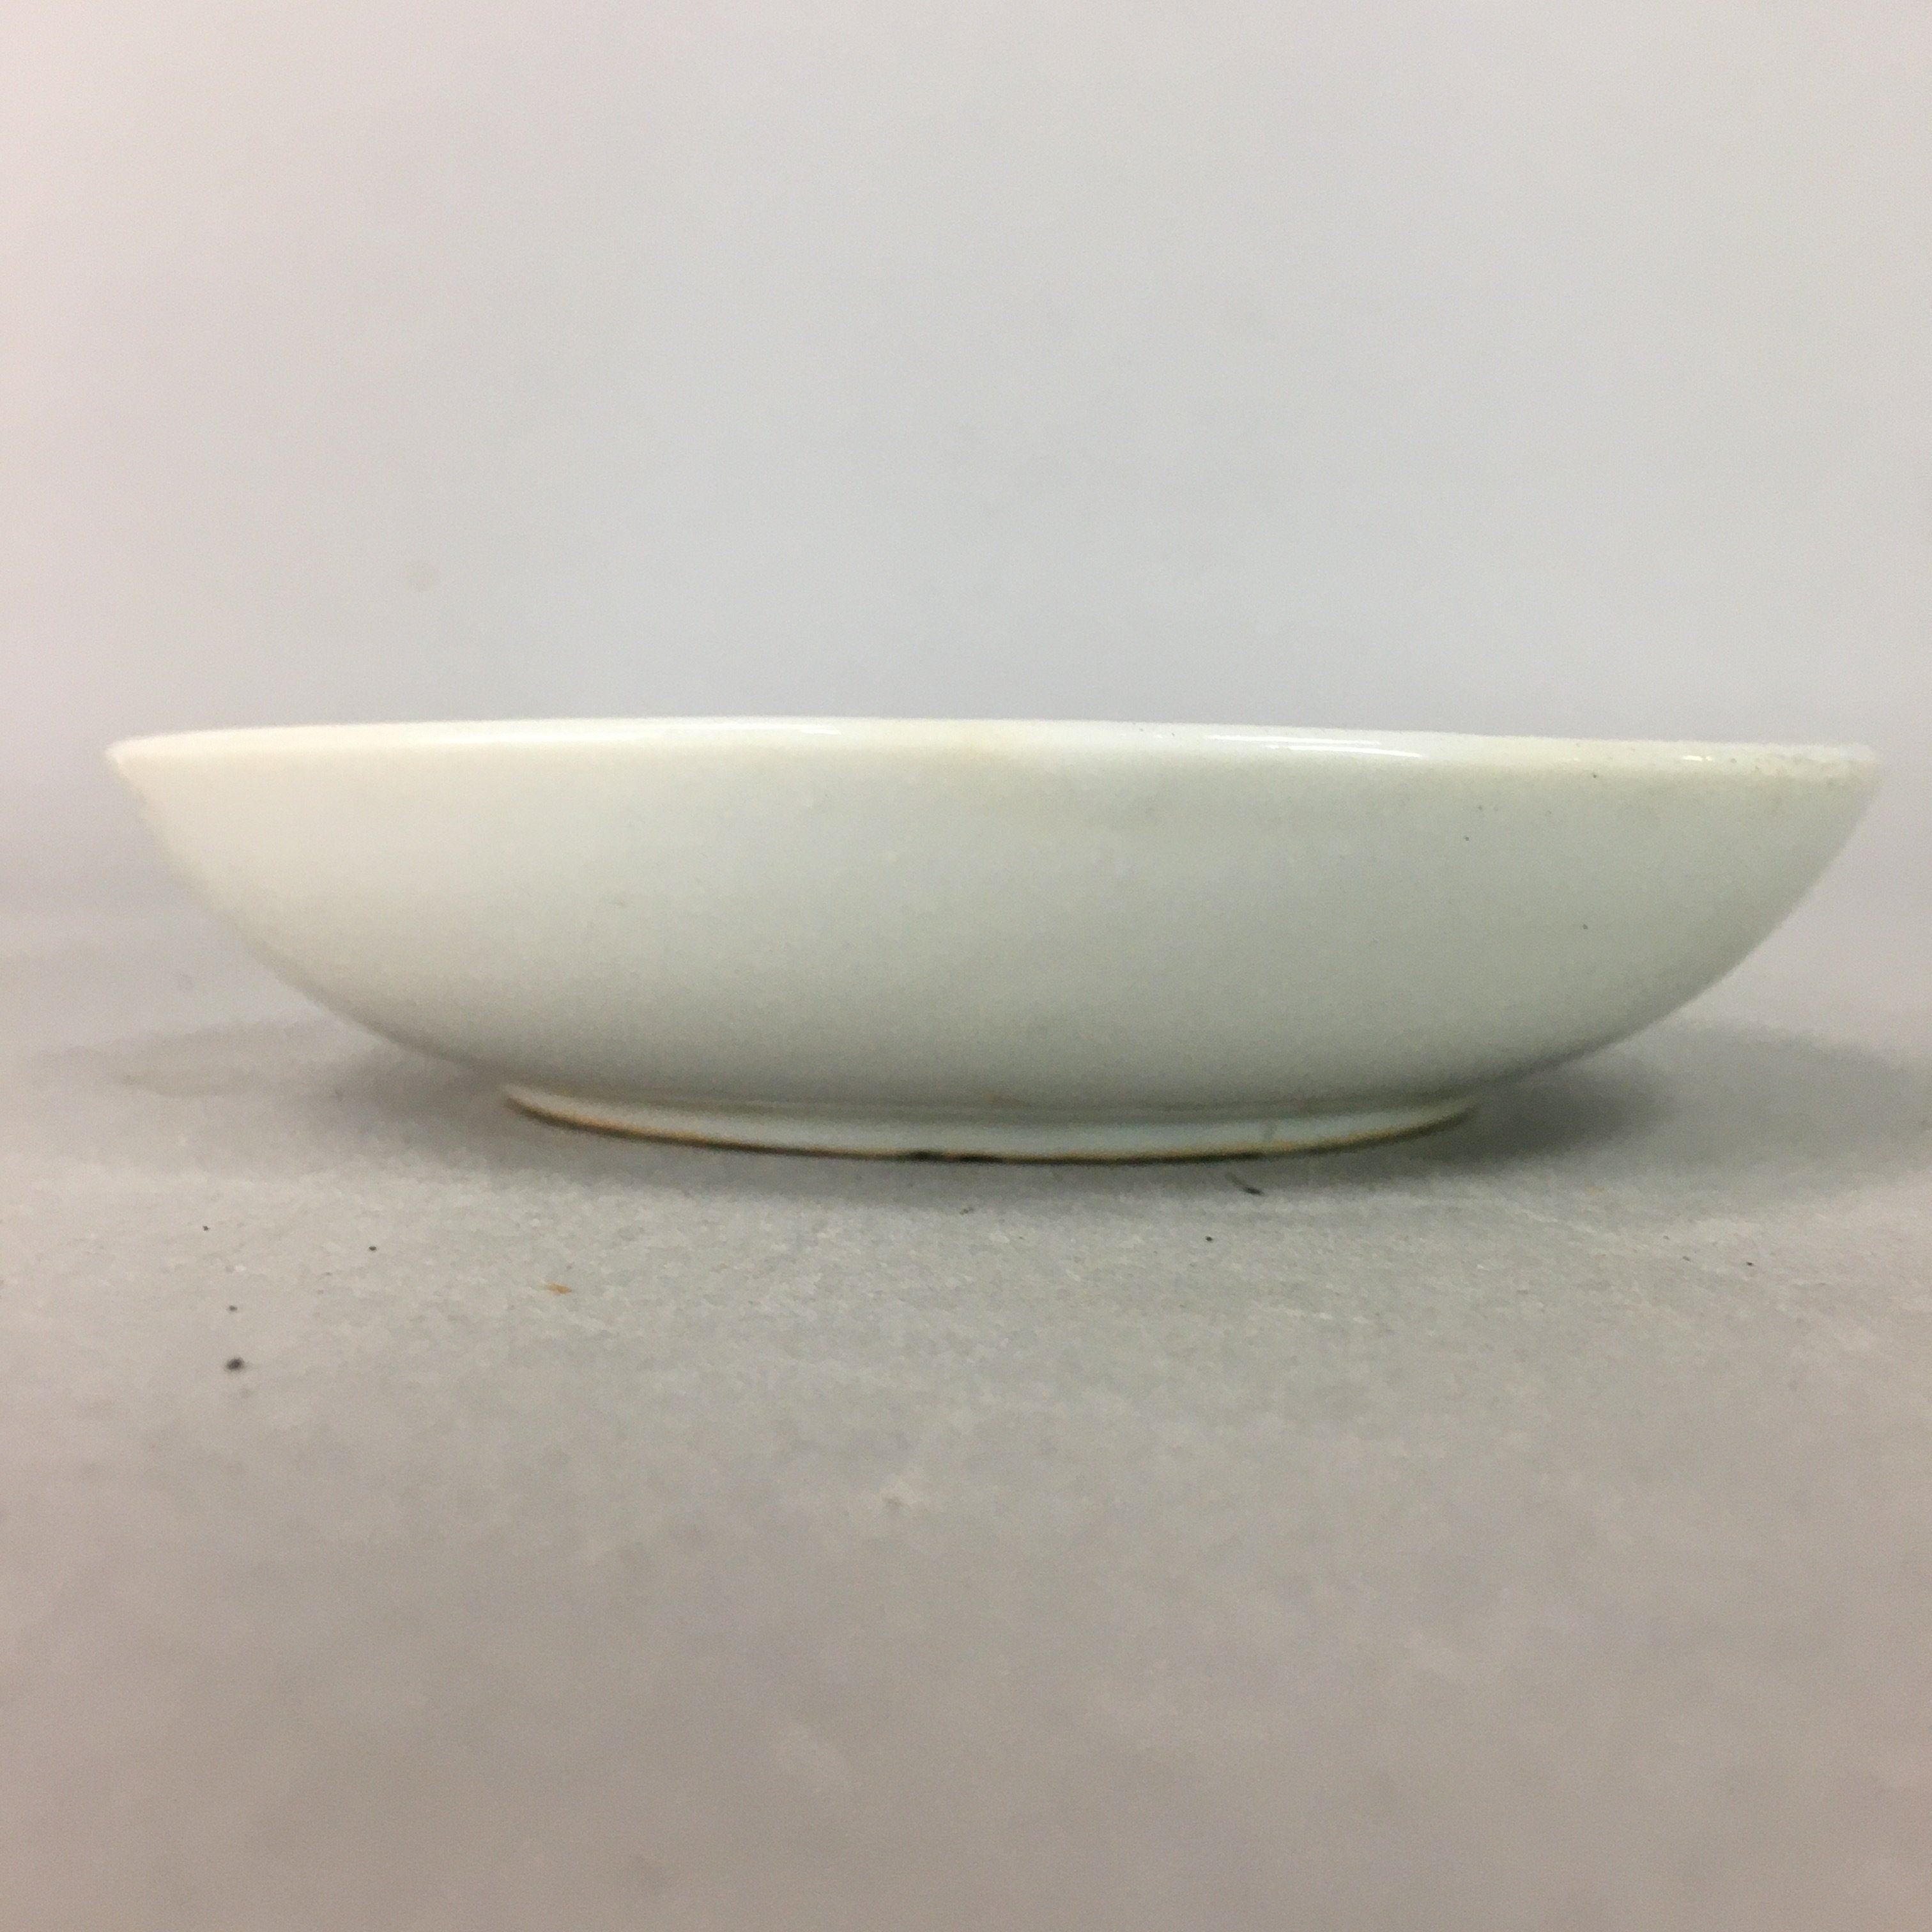 Japanese Porcelain Small Plate Vtg Kozara Floral Petal Green White PP110